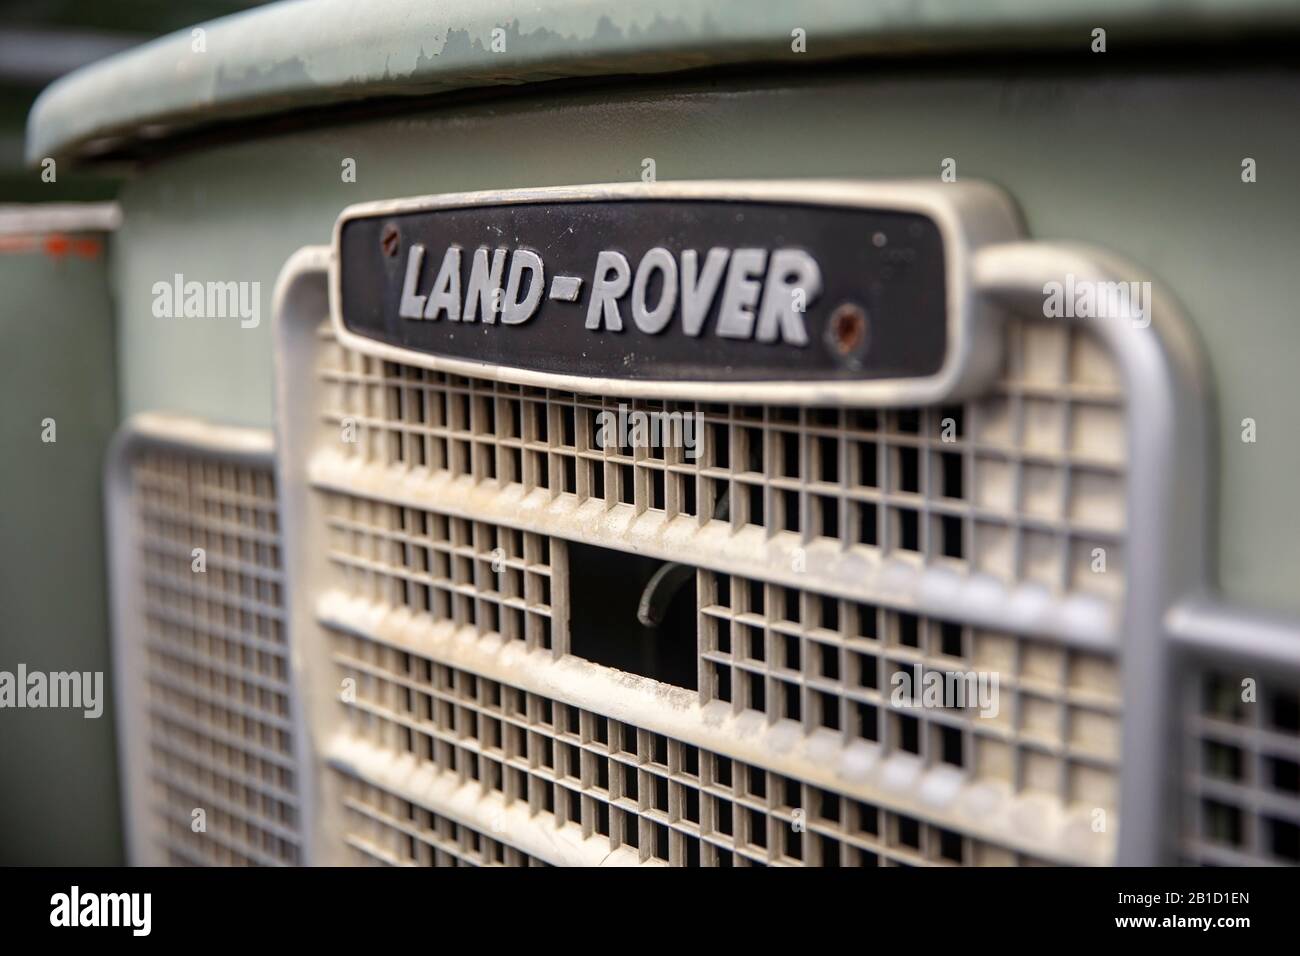 Gros plan du classique Land Rover Oval badge and Grill (faible profondeur de champ) - Asheville, Caroline du Nord, États-Unis Banque D'Images